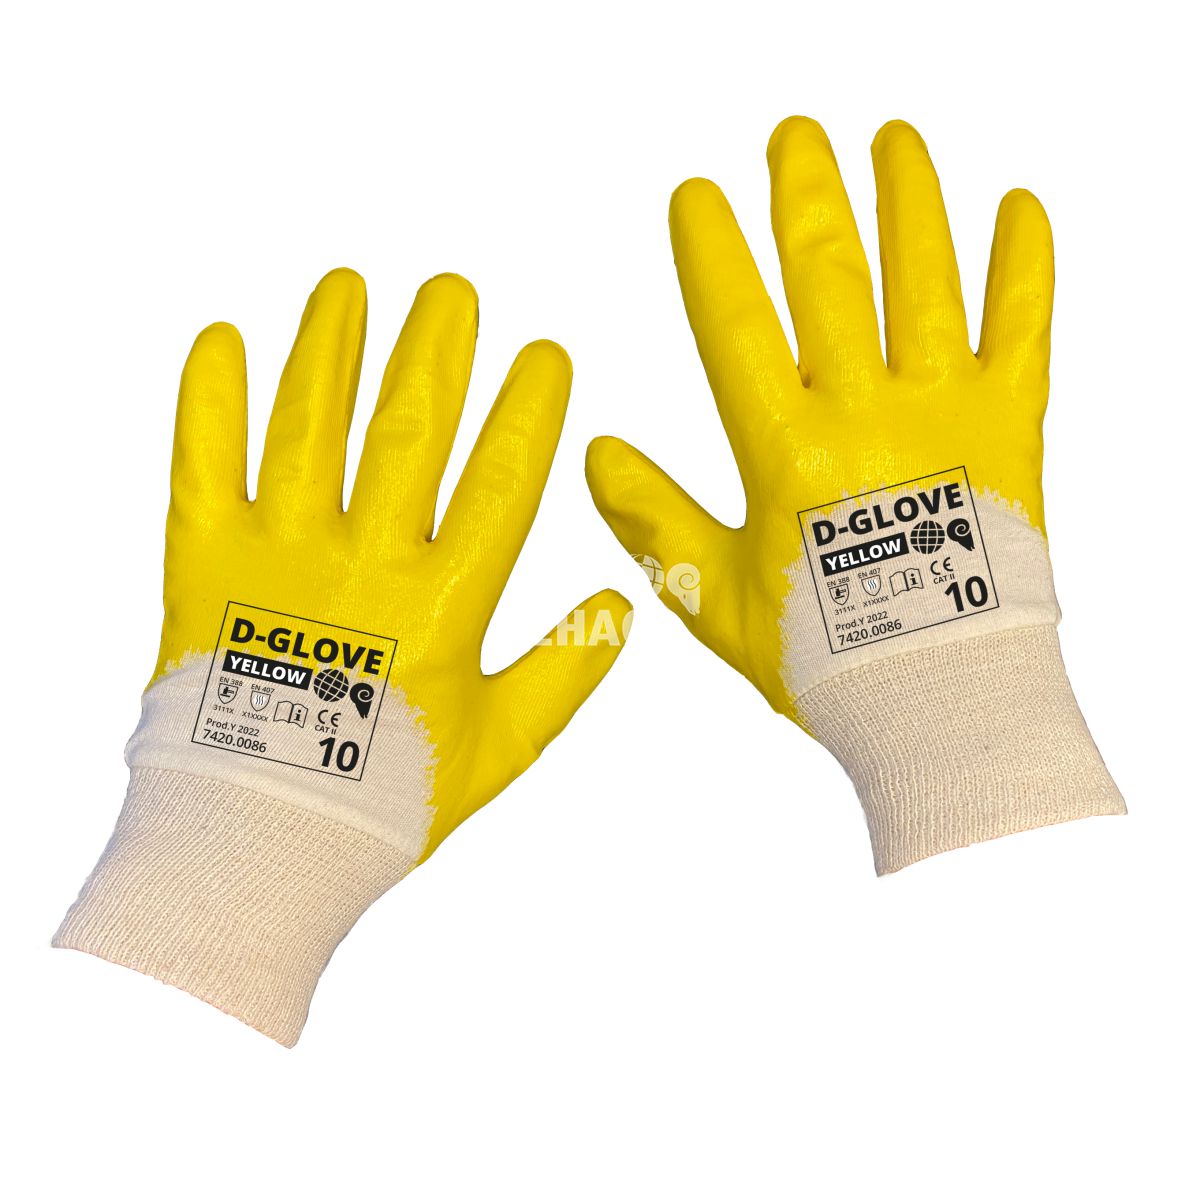 dehaco dglove 321y yellow handschoen nbr coating 11 categorie 2